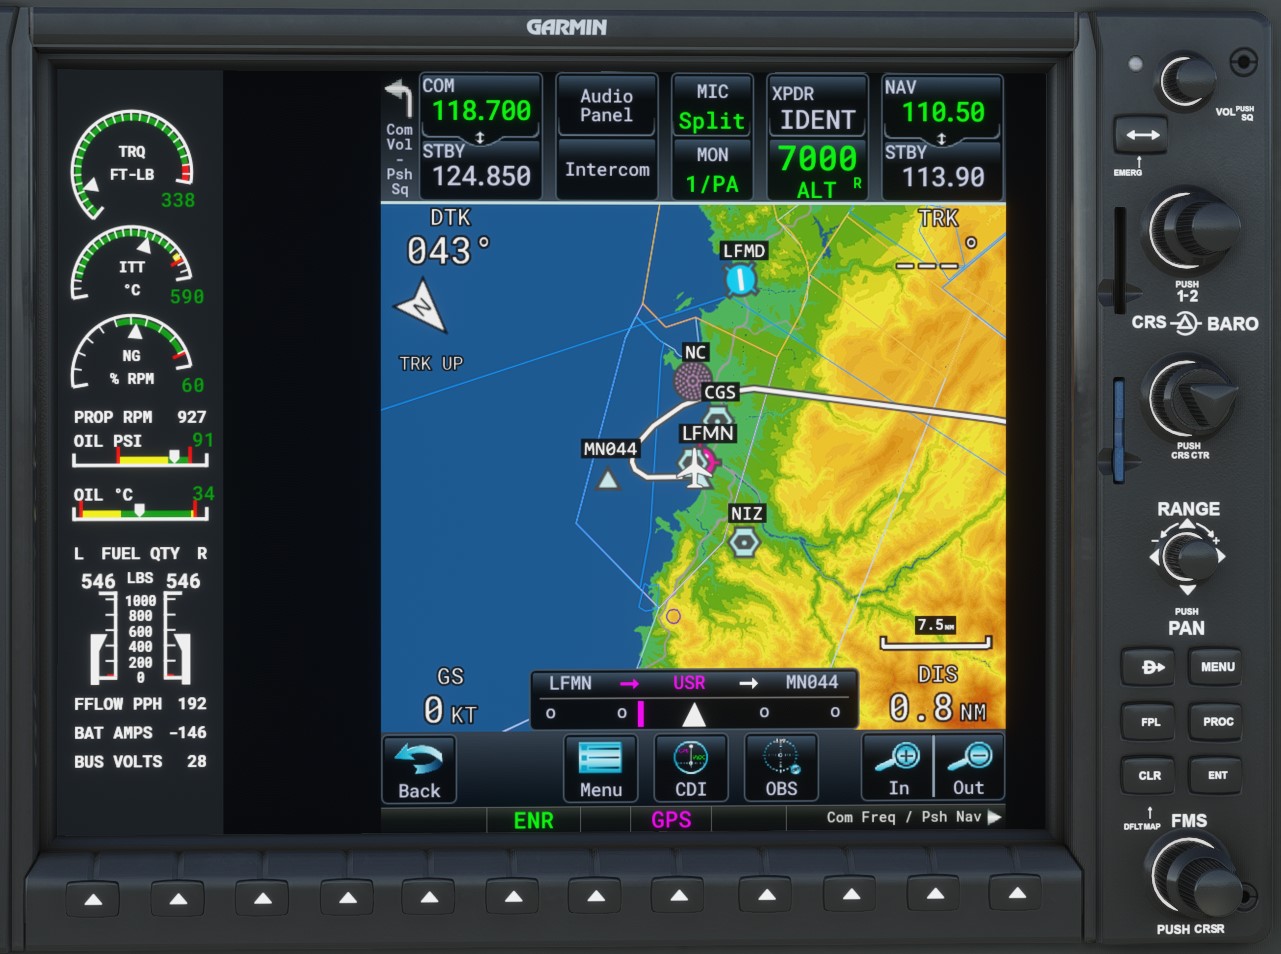 PMS50 GTN750 - Tools & Utilities - Microsoft Flight Simulator Forums